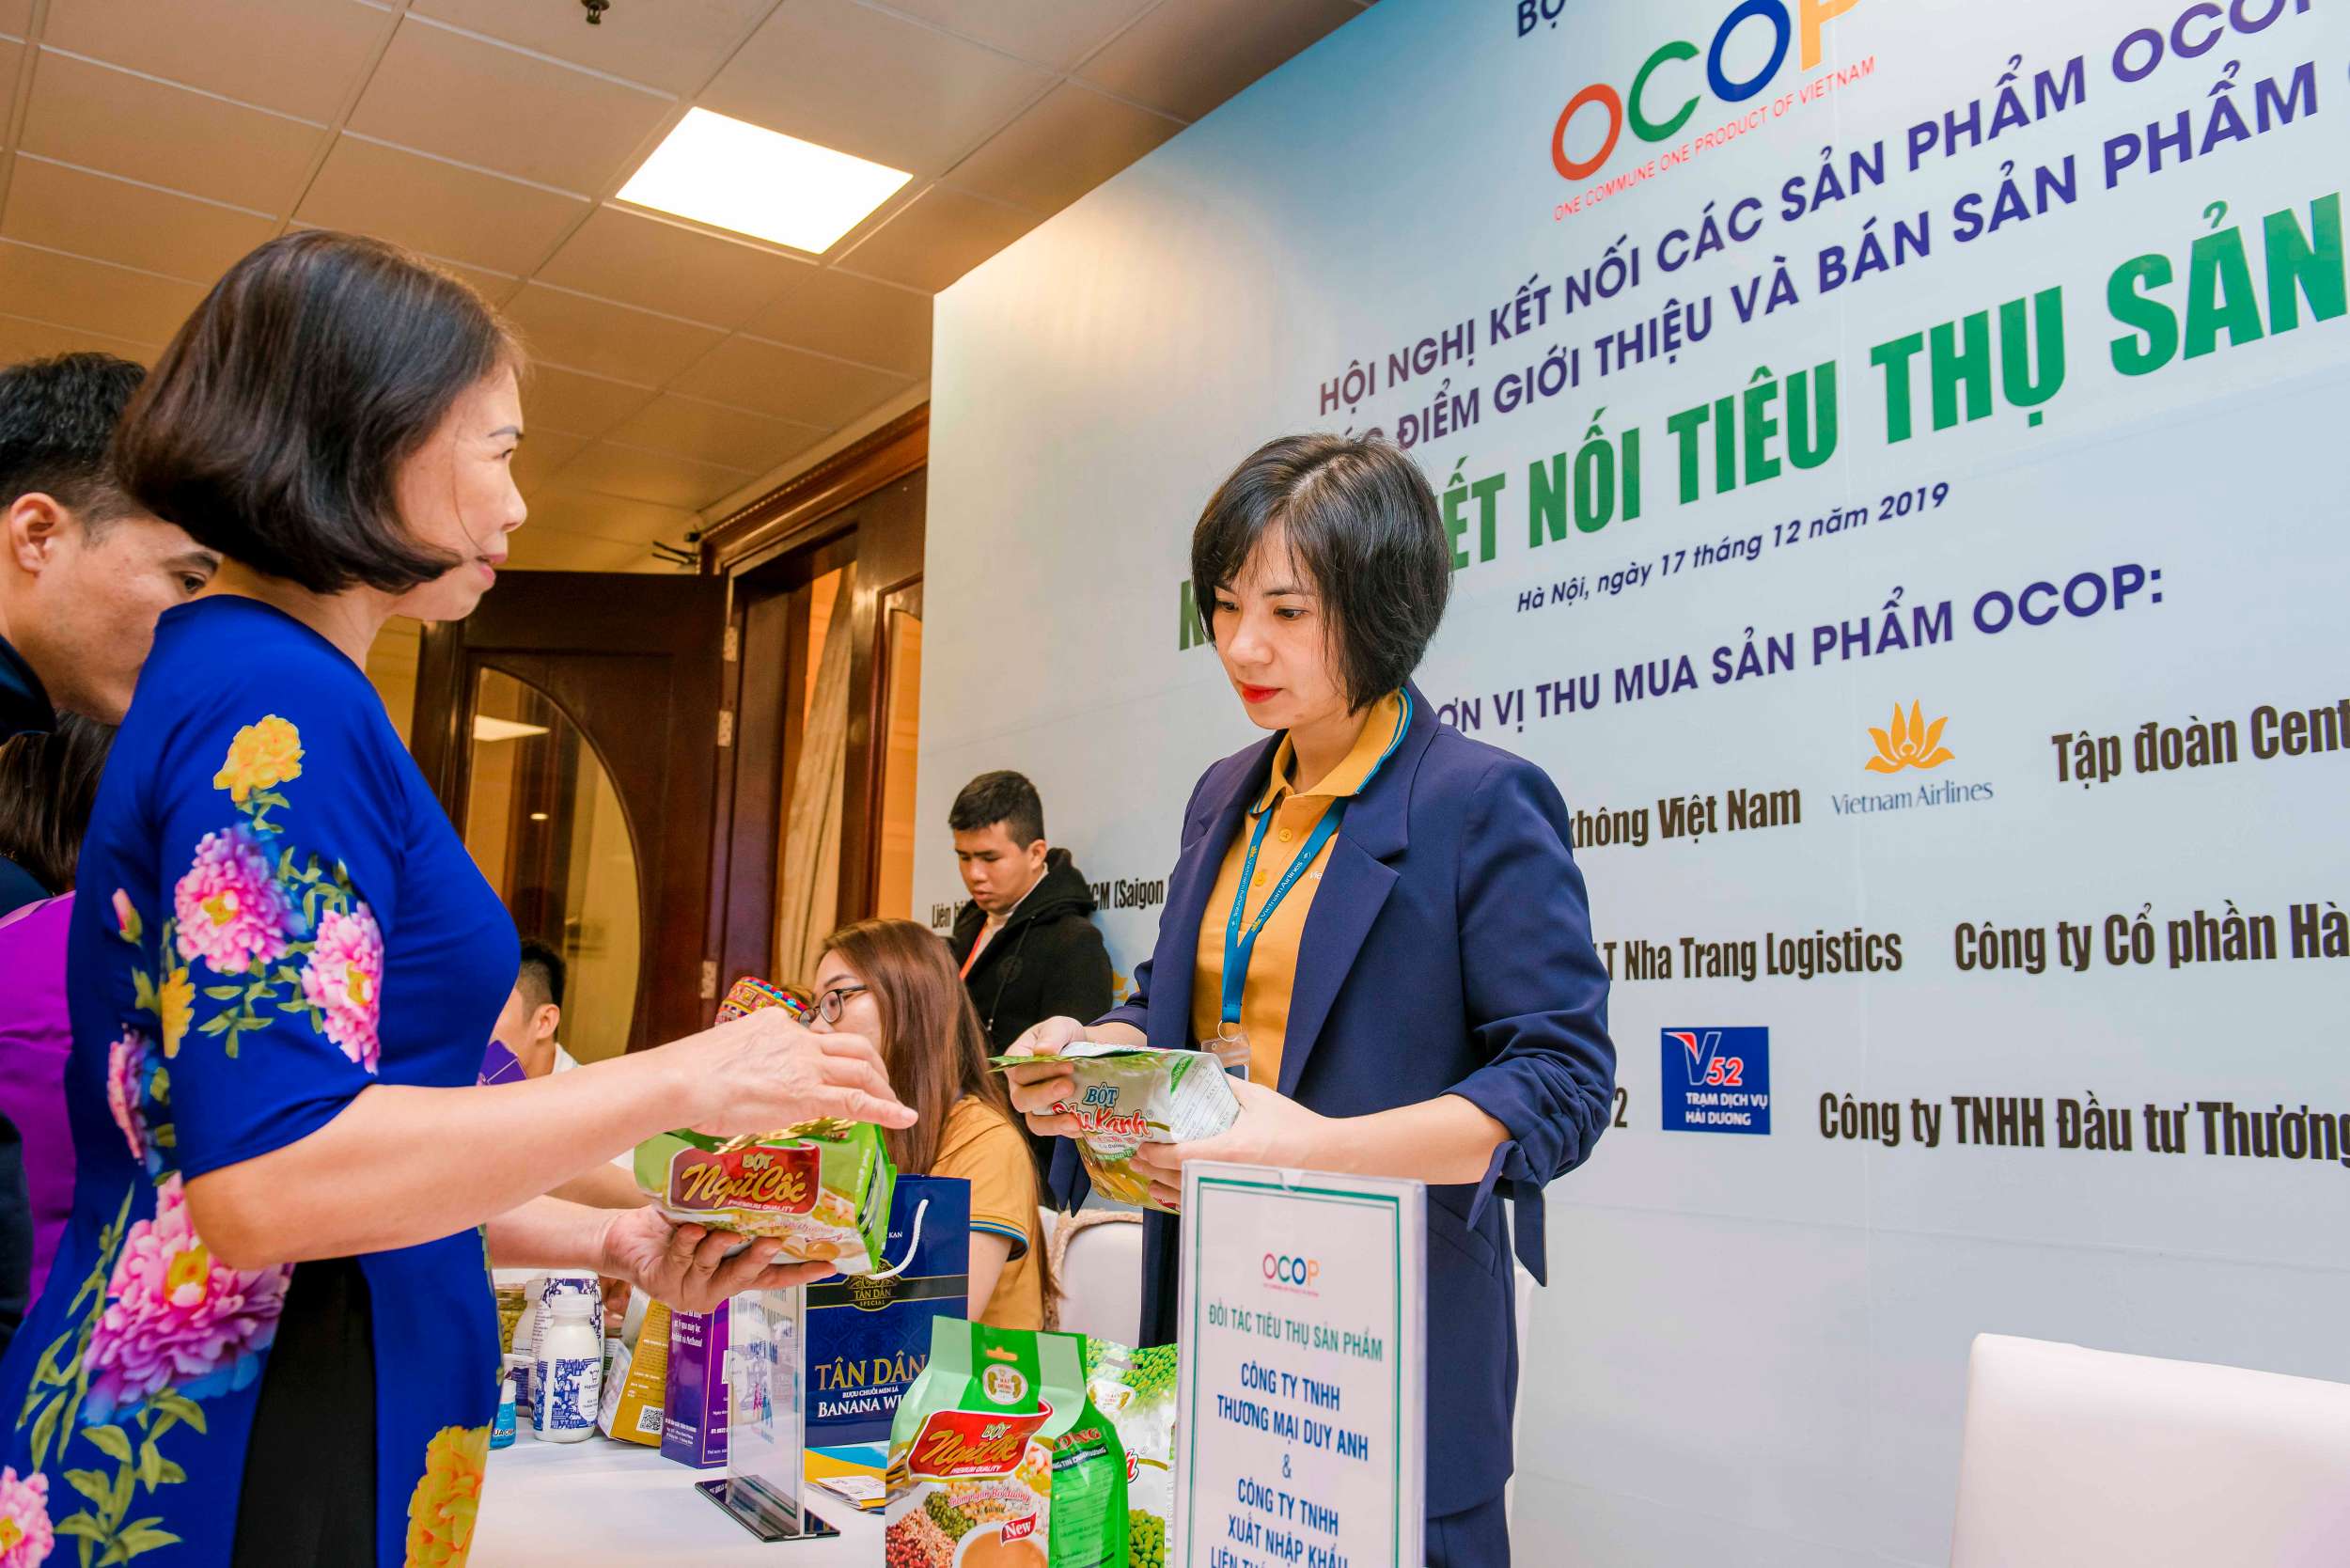 Hội nghị “Kết nối các sản phẩm OCOP vào các điểm giới thiệu và bán sản phẩm OCOP” - một sự kiện nổi bật trong chuỗi hoạt động triển khai Chương trình OCOP năm 2019 của Bộ Công Thương